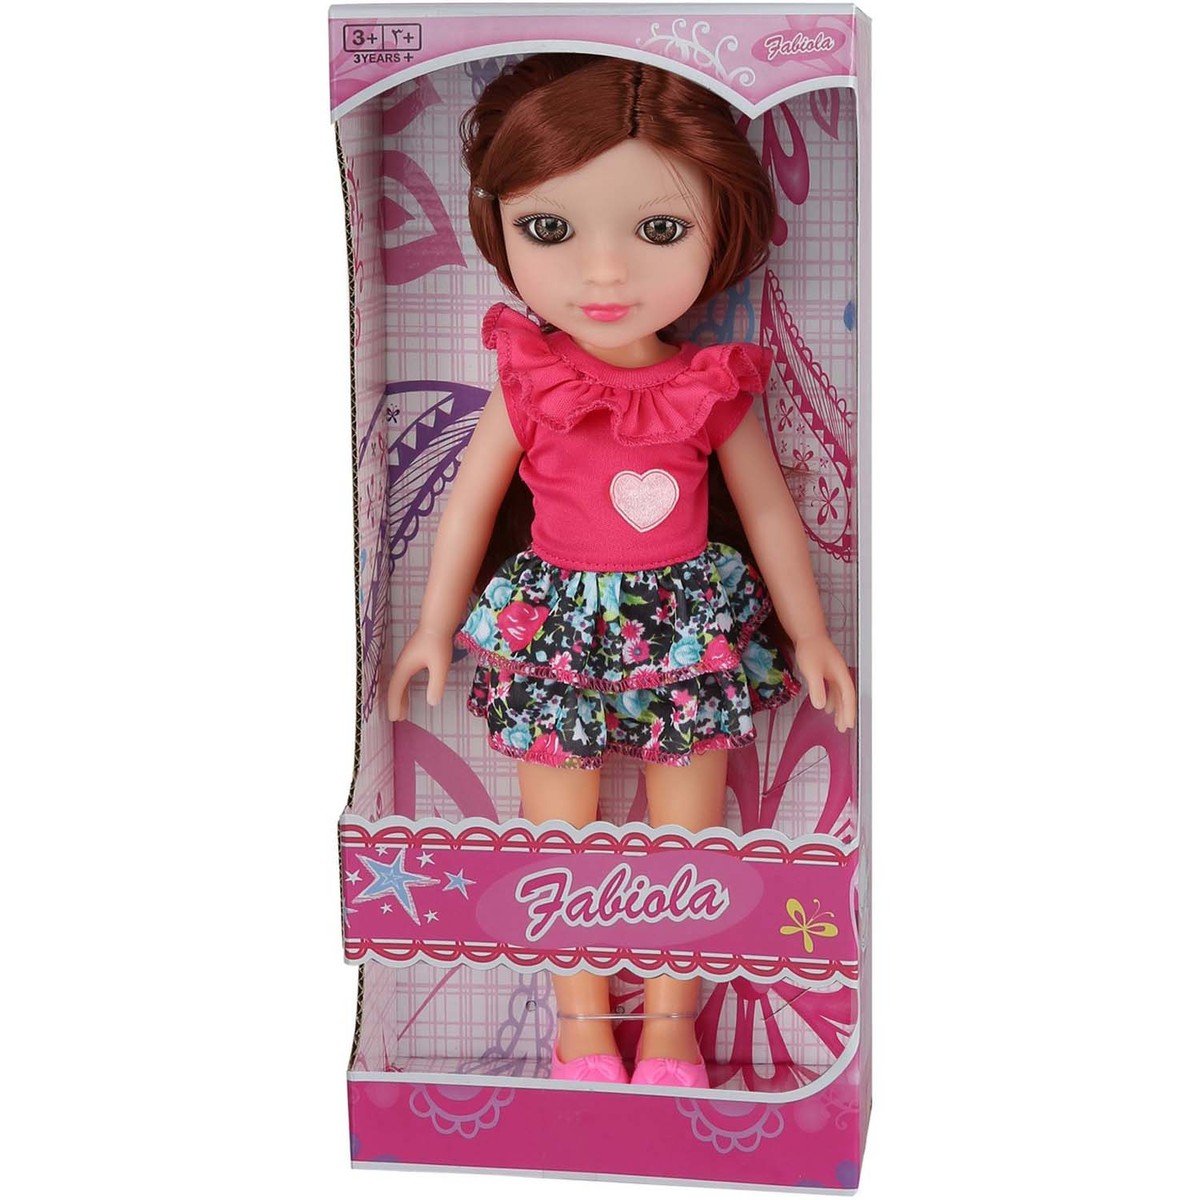 Fabiola Fashion Doll 51041 32cm